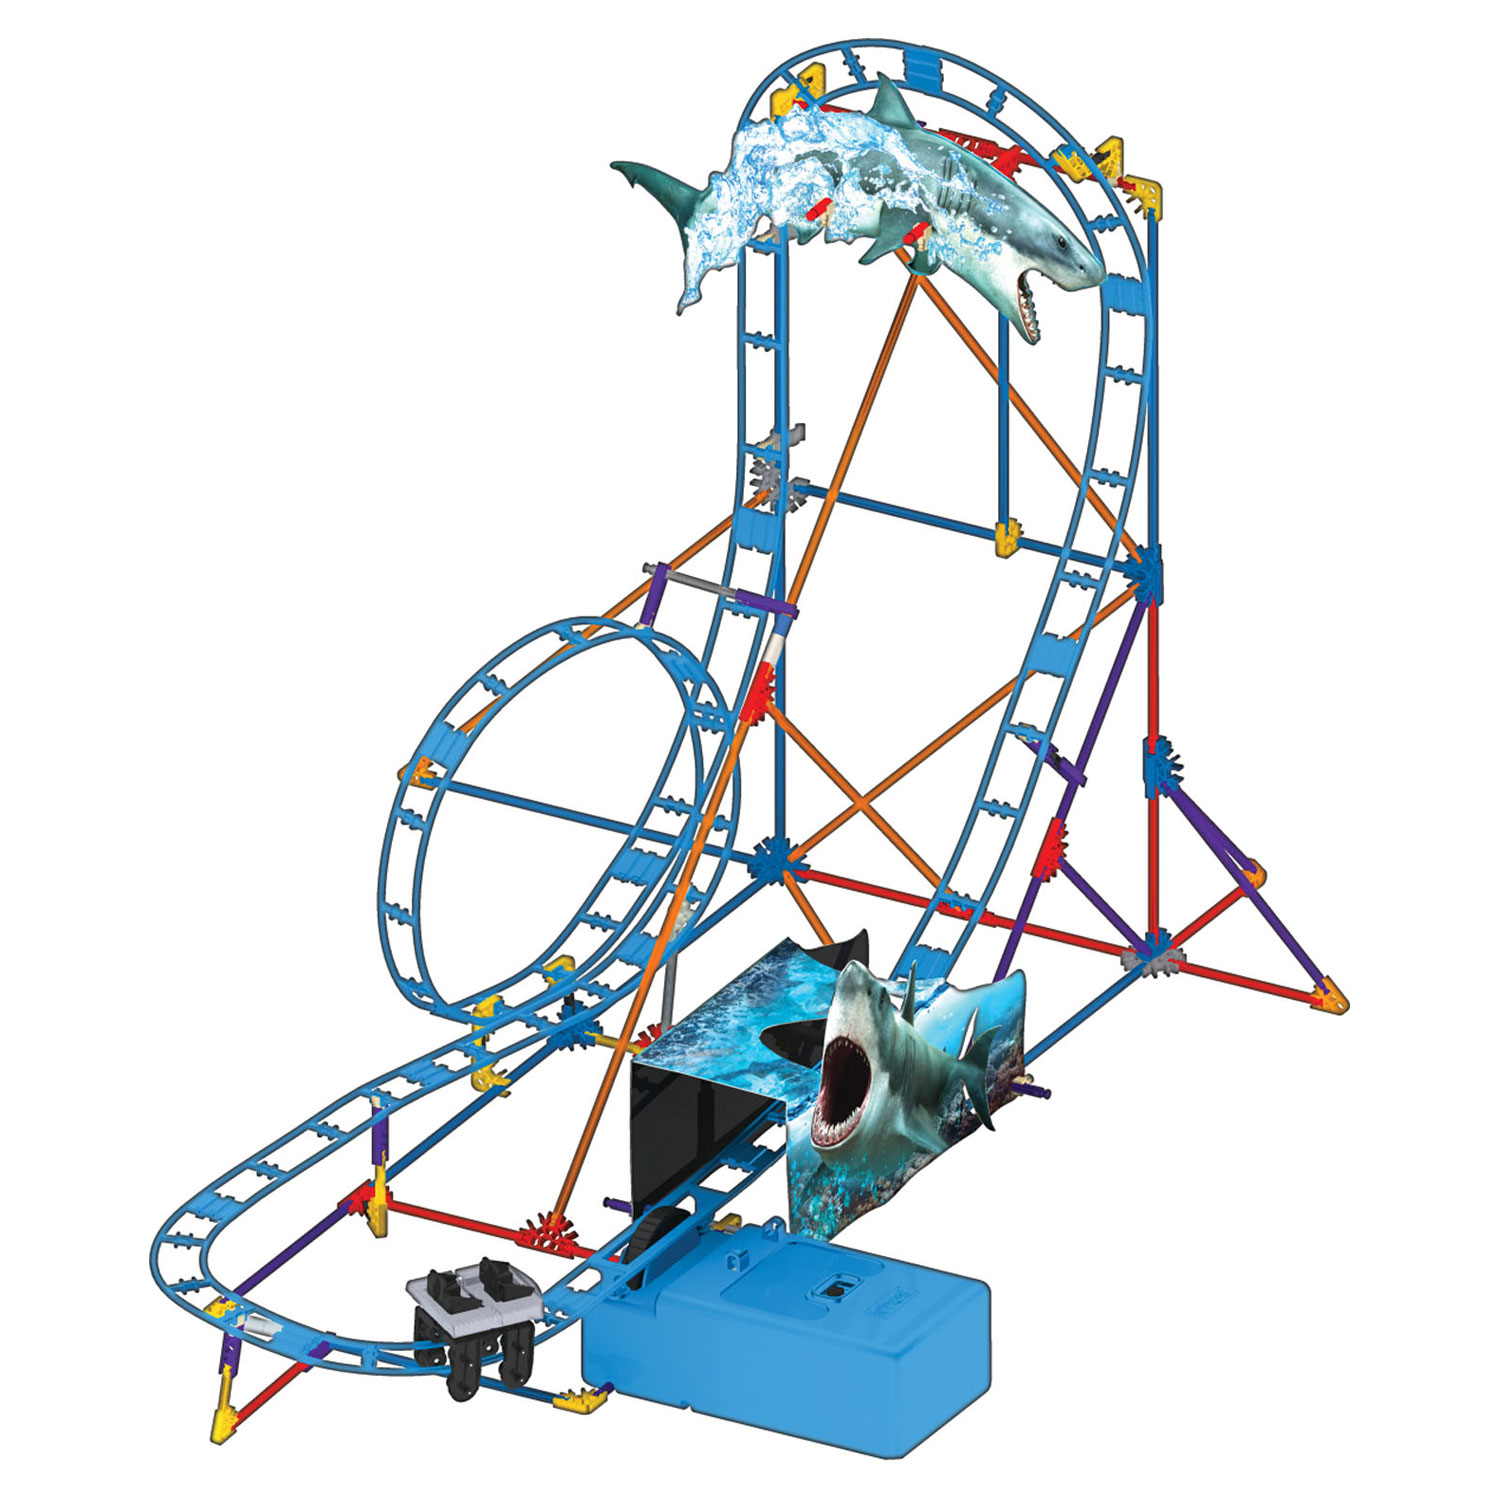 K'Nex Thrill Rides - Shark Attack Coaster, 170dlg